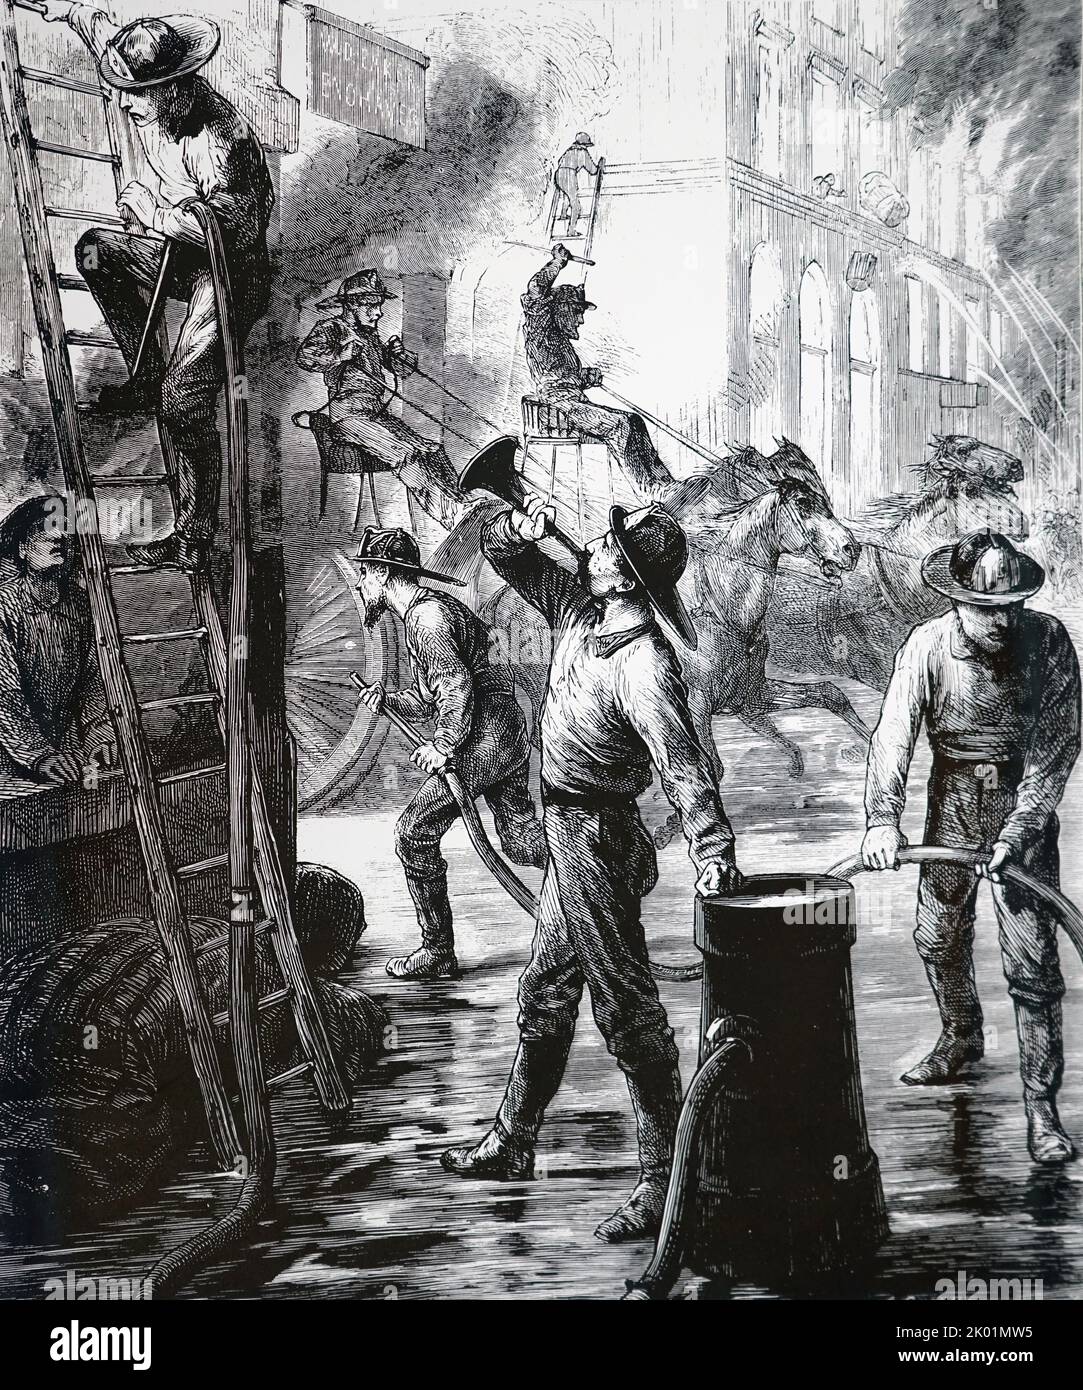 Der große Brand von Chicago, 1871. Feuerwehrmänner tun ihr Möglichstes, um die Flammen zu kontrollieren. Stockfoto